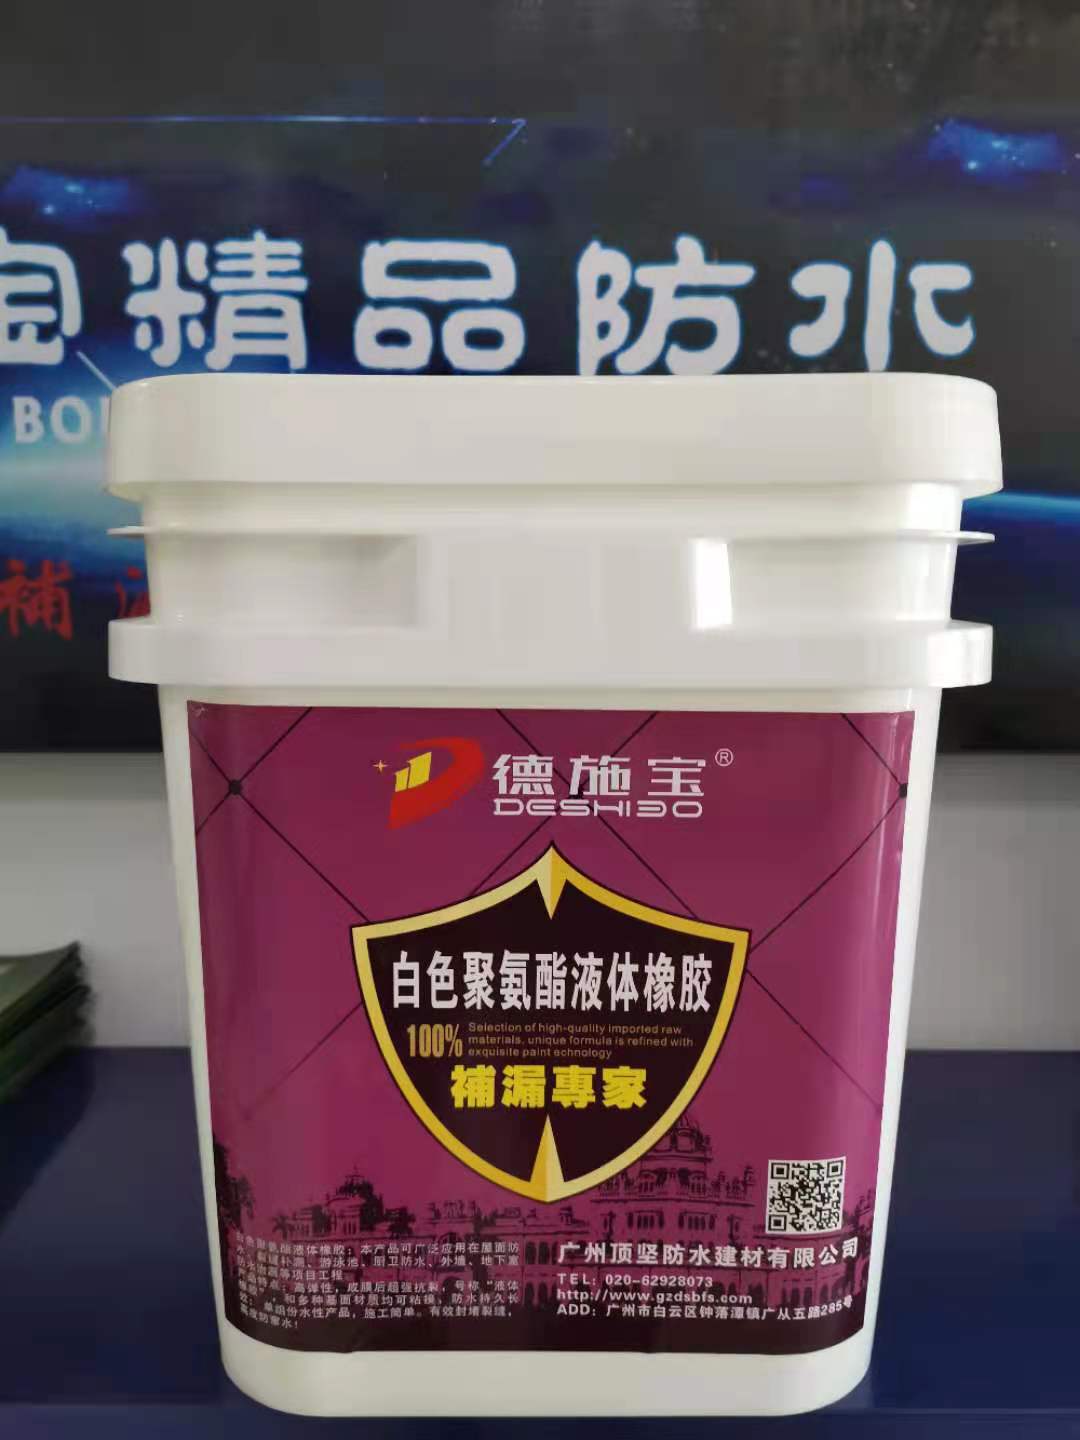 白色聚氨酯液体橡胶 广州防水涂料厂家 德施宝防水材料厂家招商